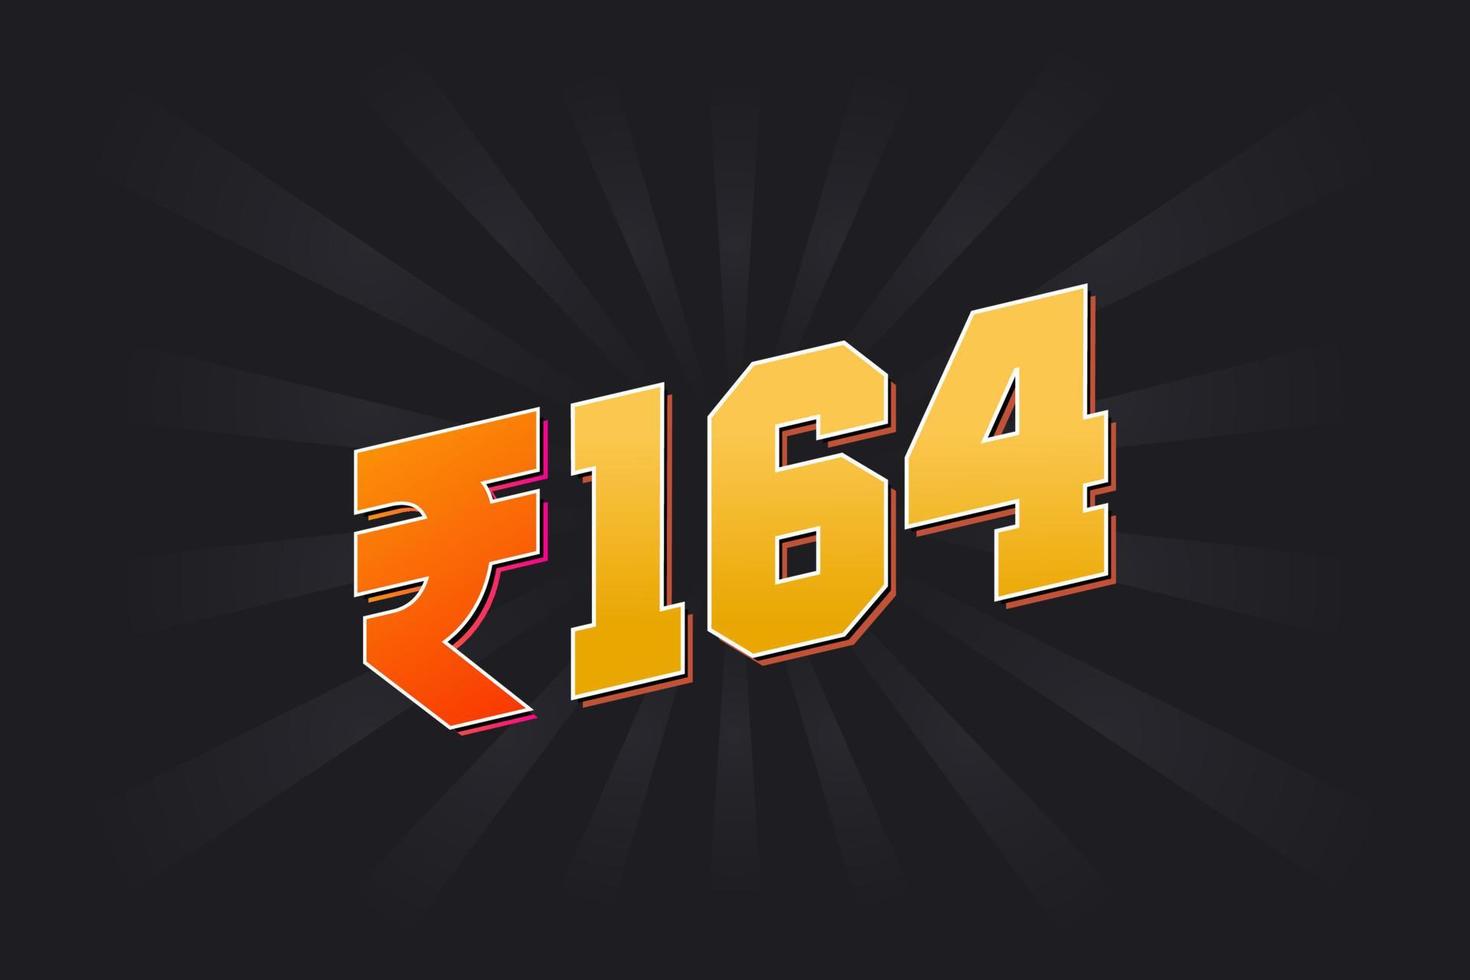 164 indisk rupee vektor valuta bild. 164 rupee symbol djärv text vektor illustration